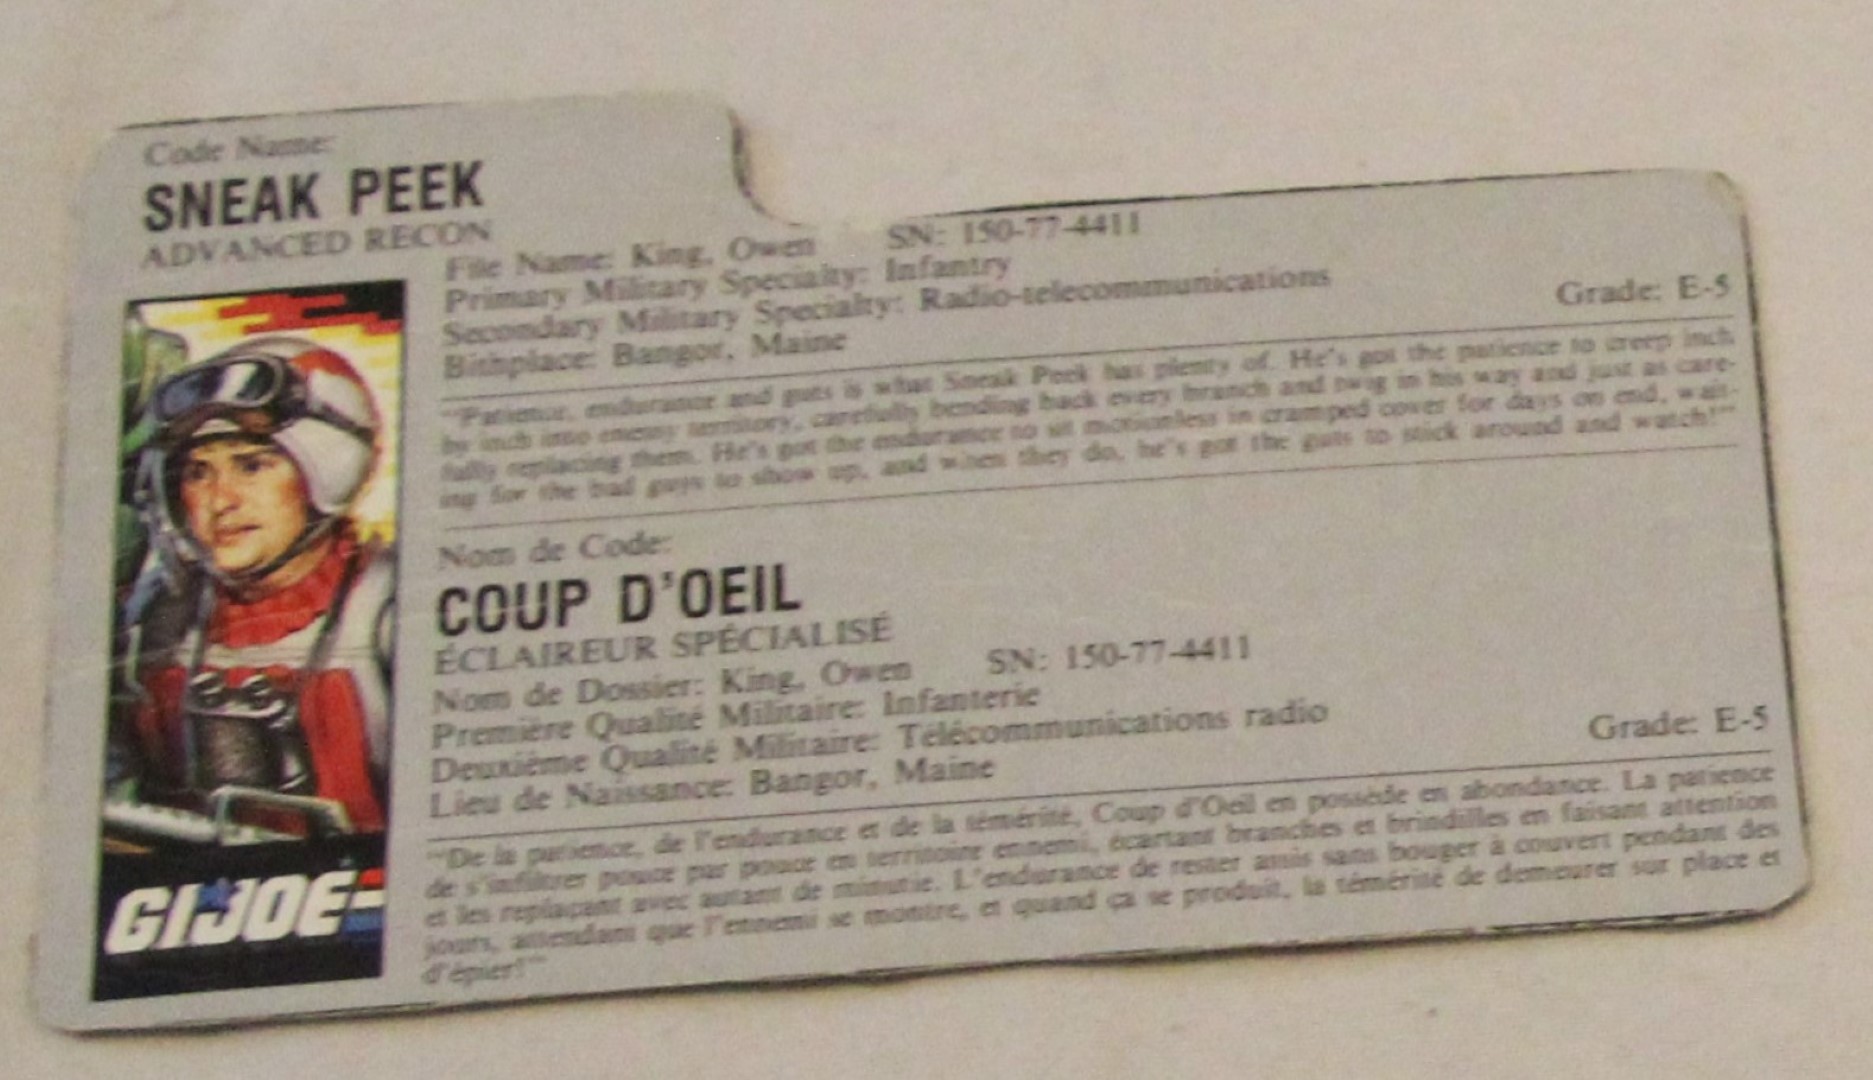 1987 sneekpeak file card